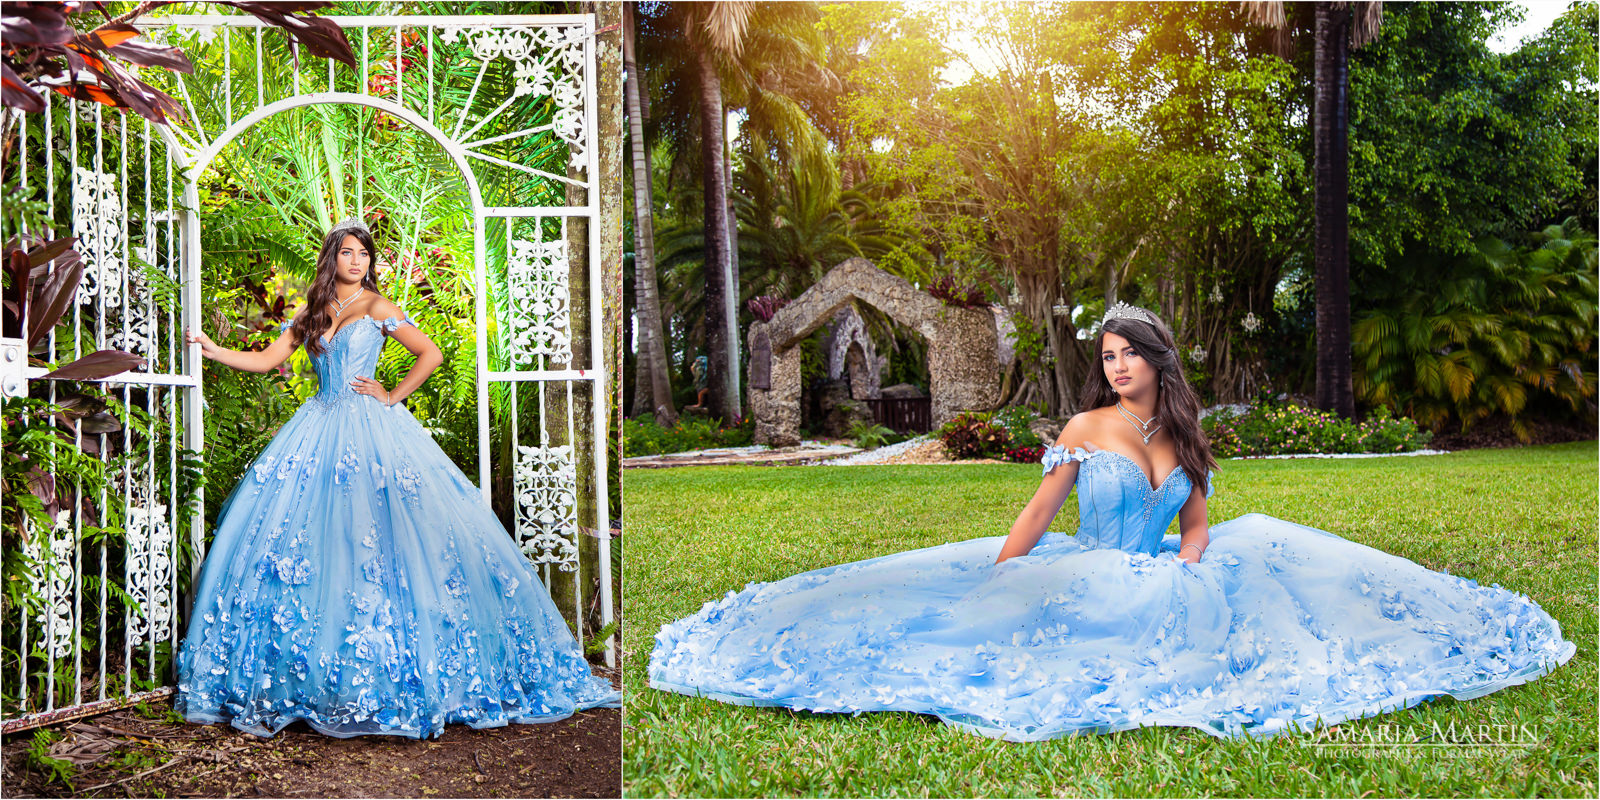 Rent quinceanera dresses, Villa Turqueza photoshoot, blue quinceanera dresses, vestidos quinceaneras, mejores fotos de quinceaneras en Miami 2